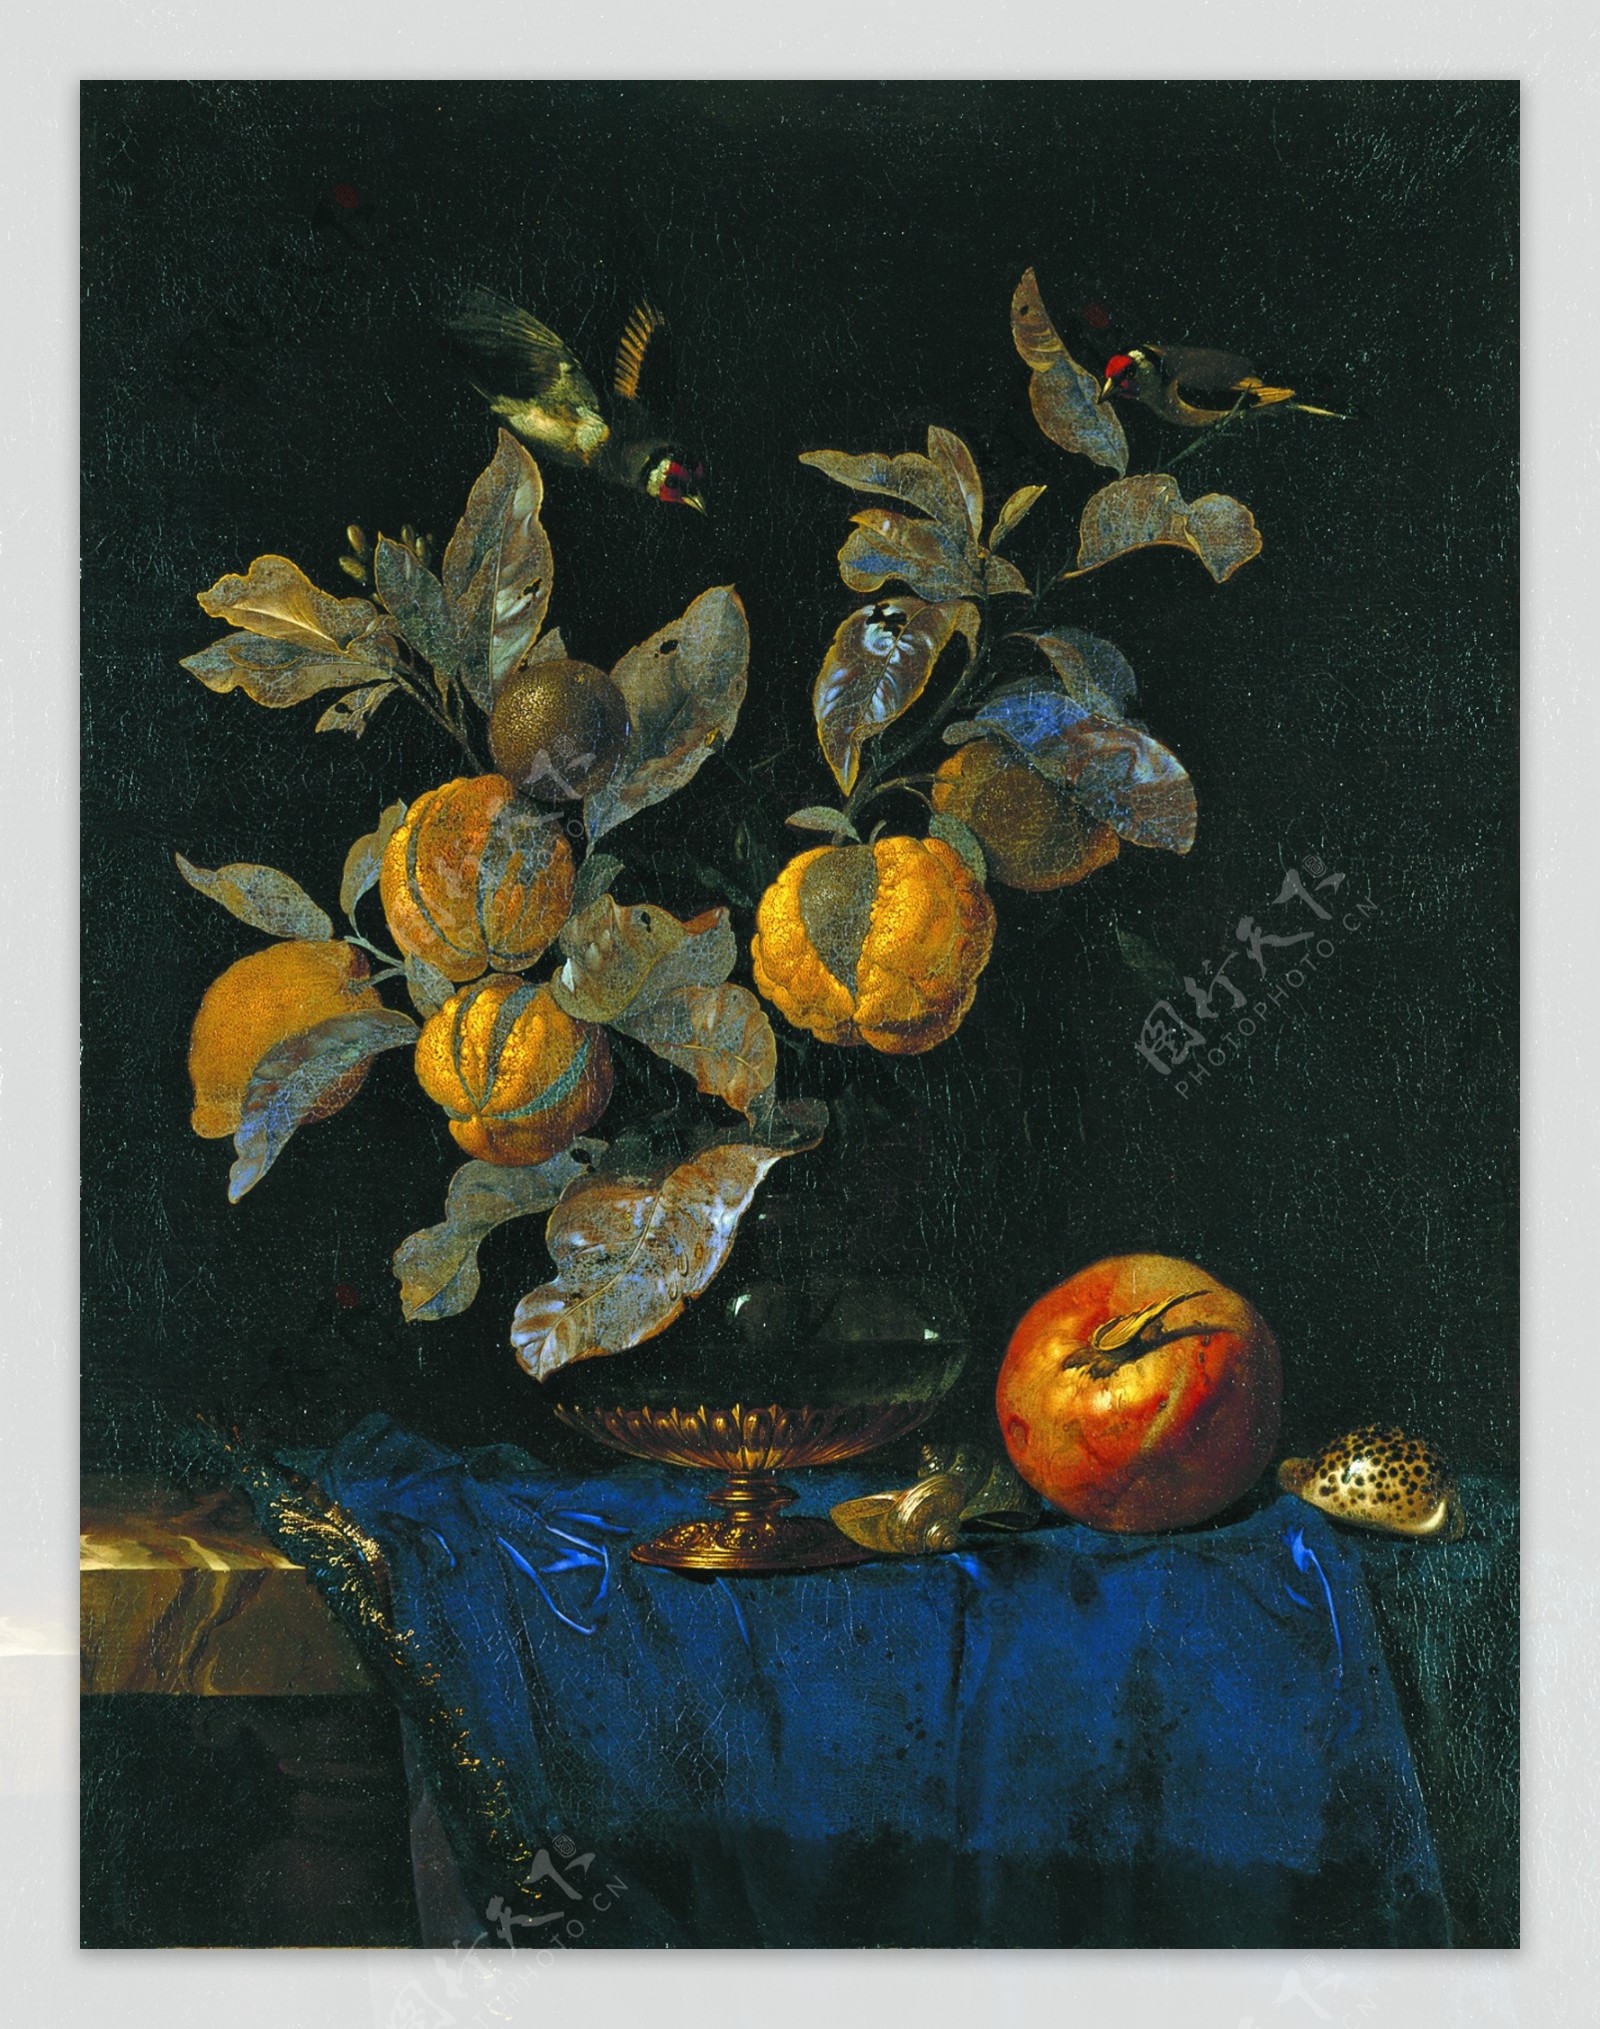 WillemvanAelstStillLifewithFruit1664花卉水果蔬菜器皿静物印象画派写实主义油画装饰画